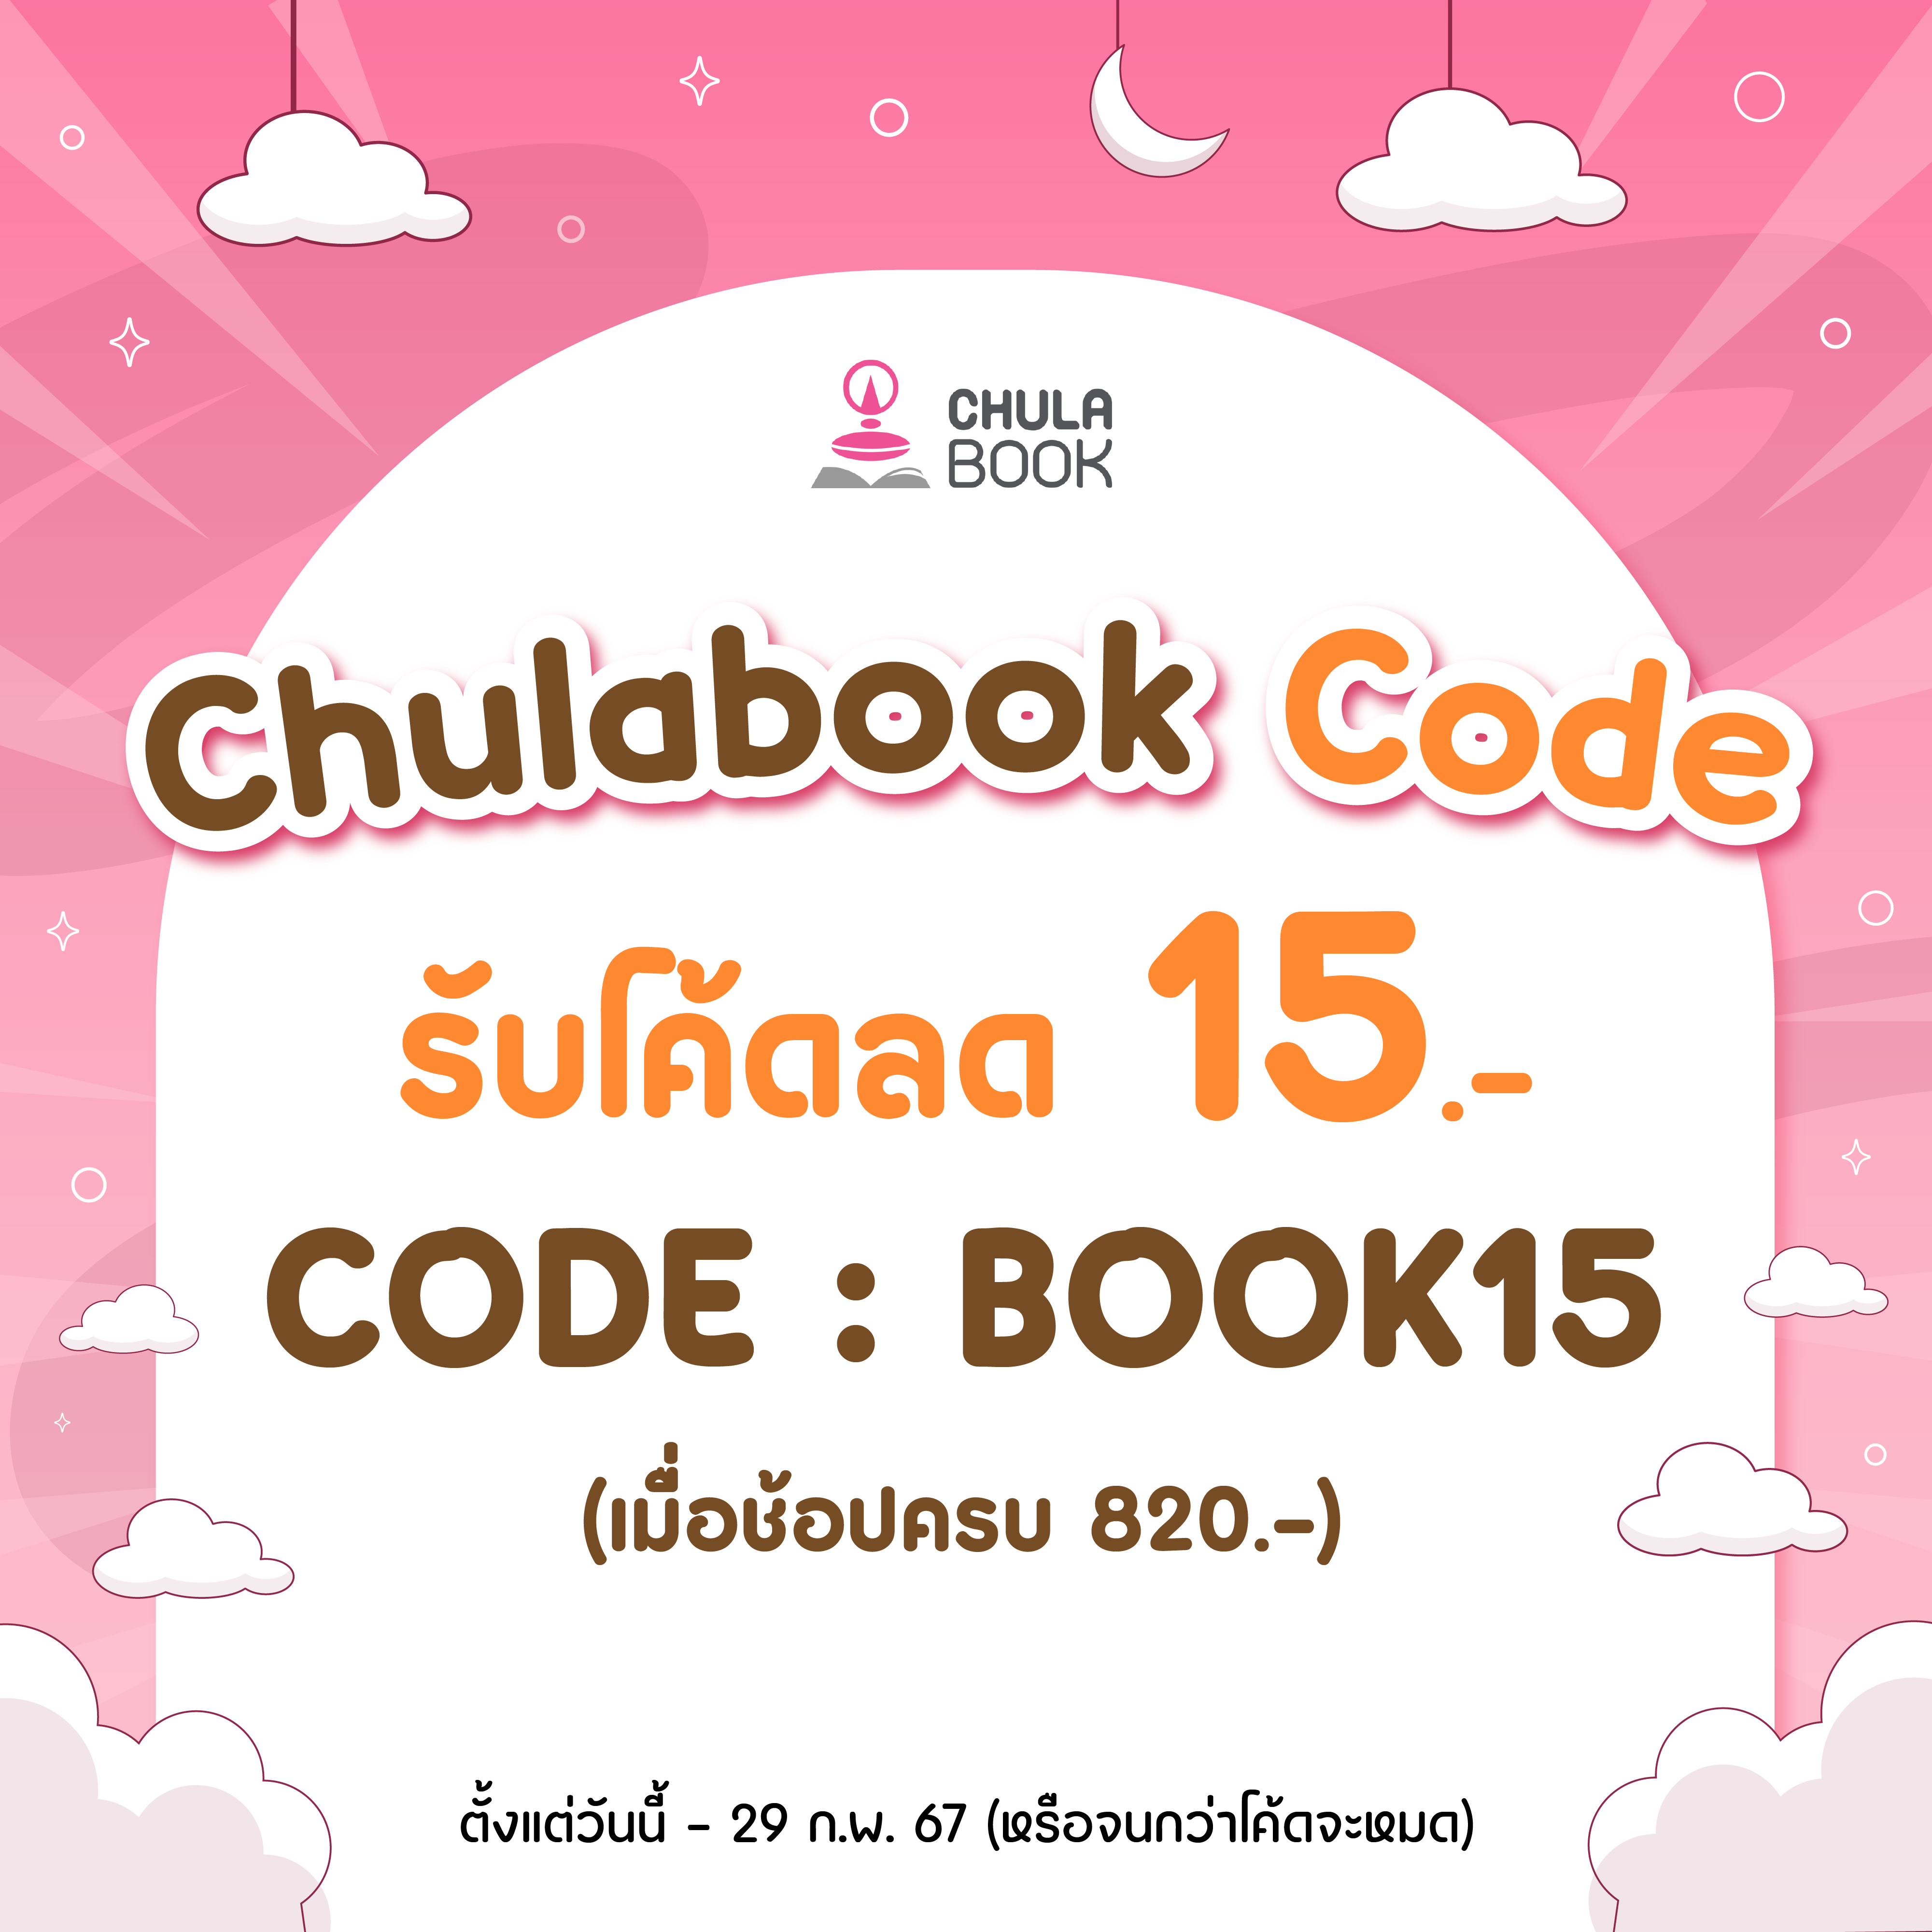 Chulabook Code